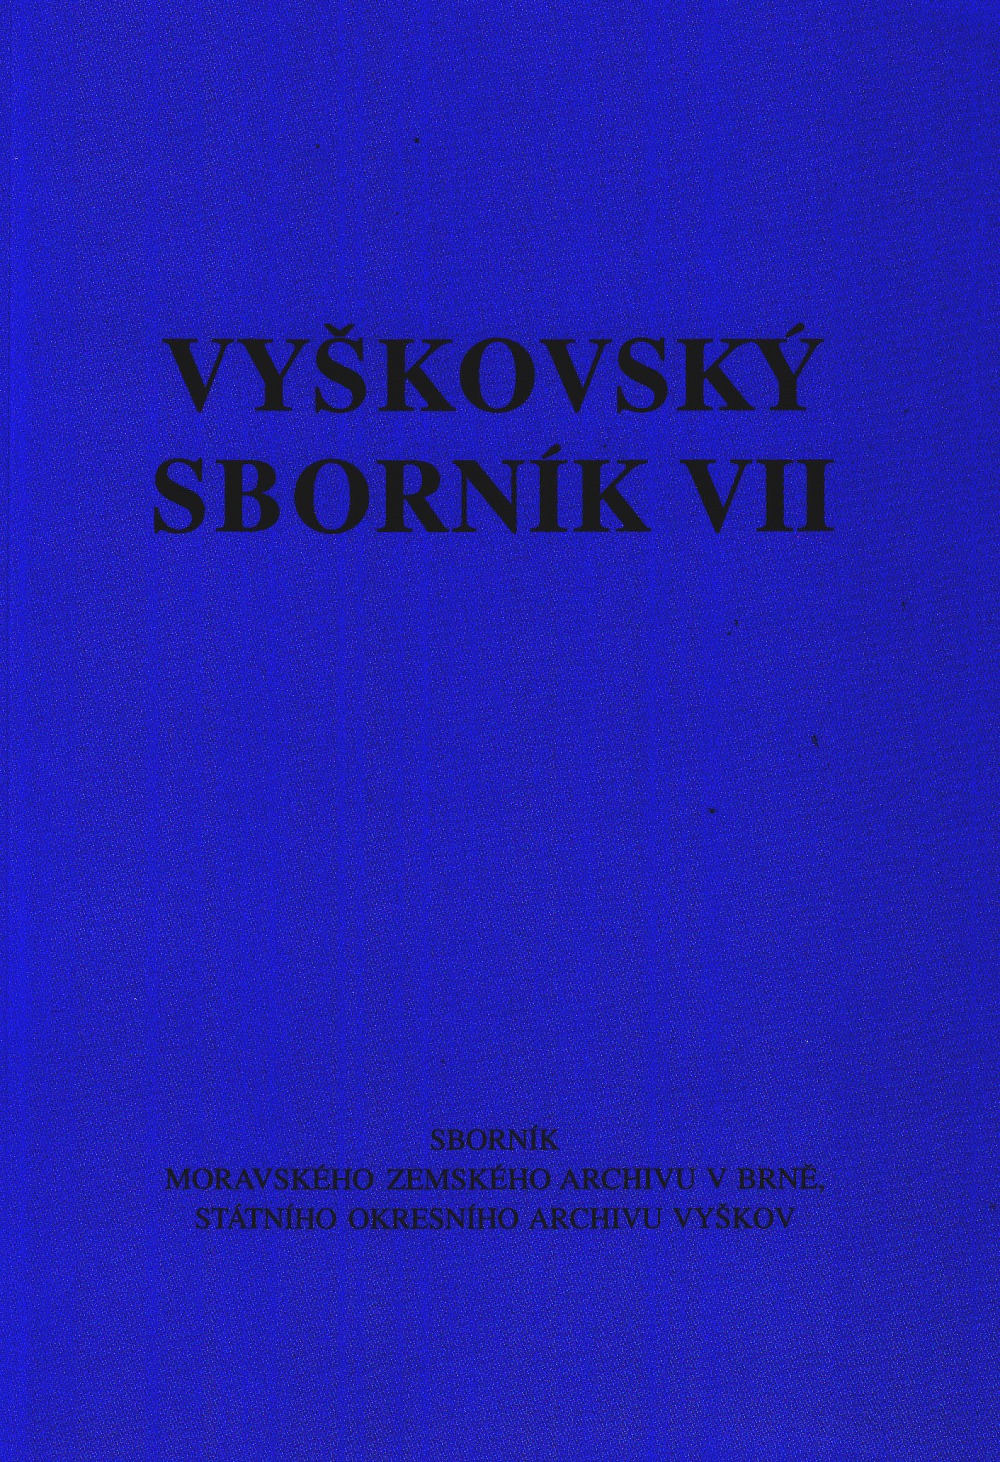 Vyškovský sborník VII.